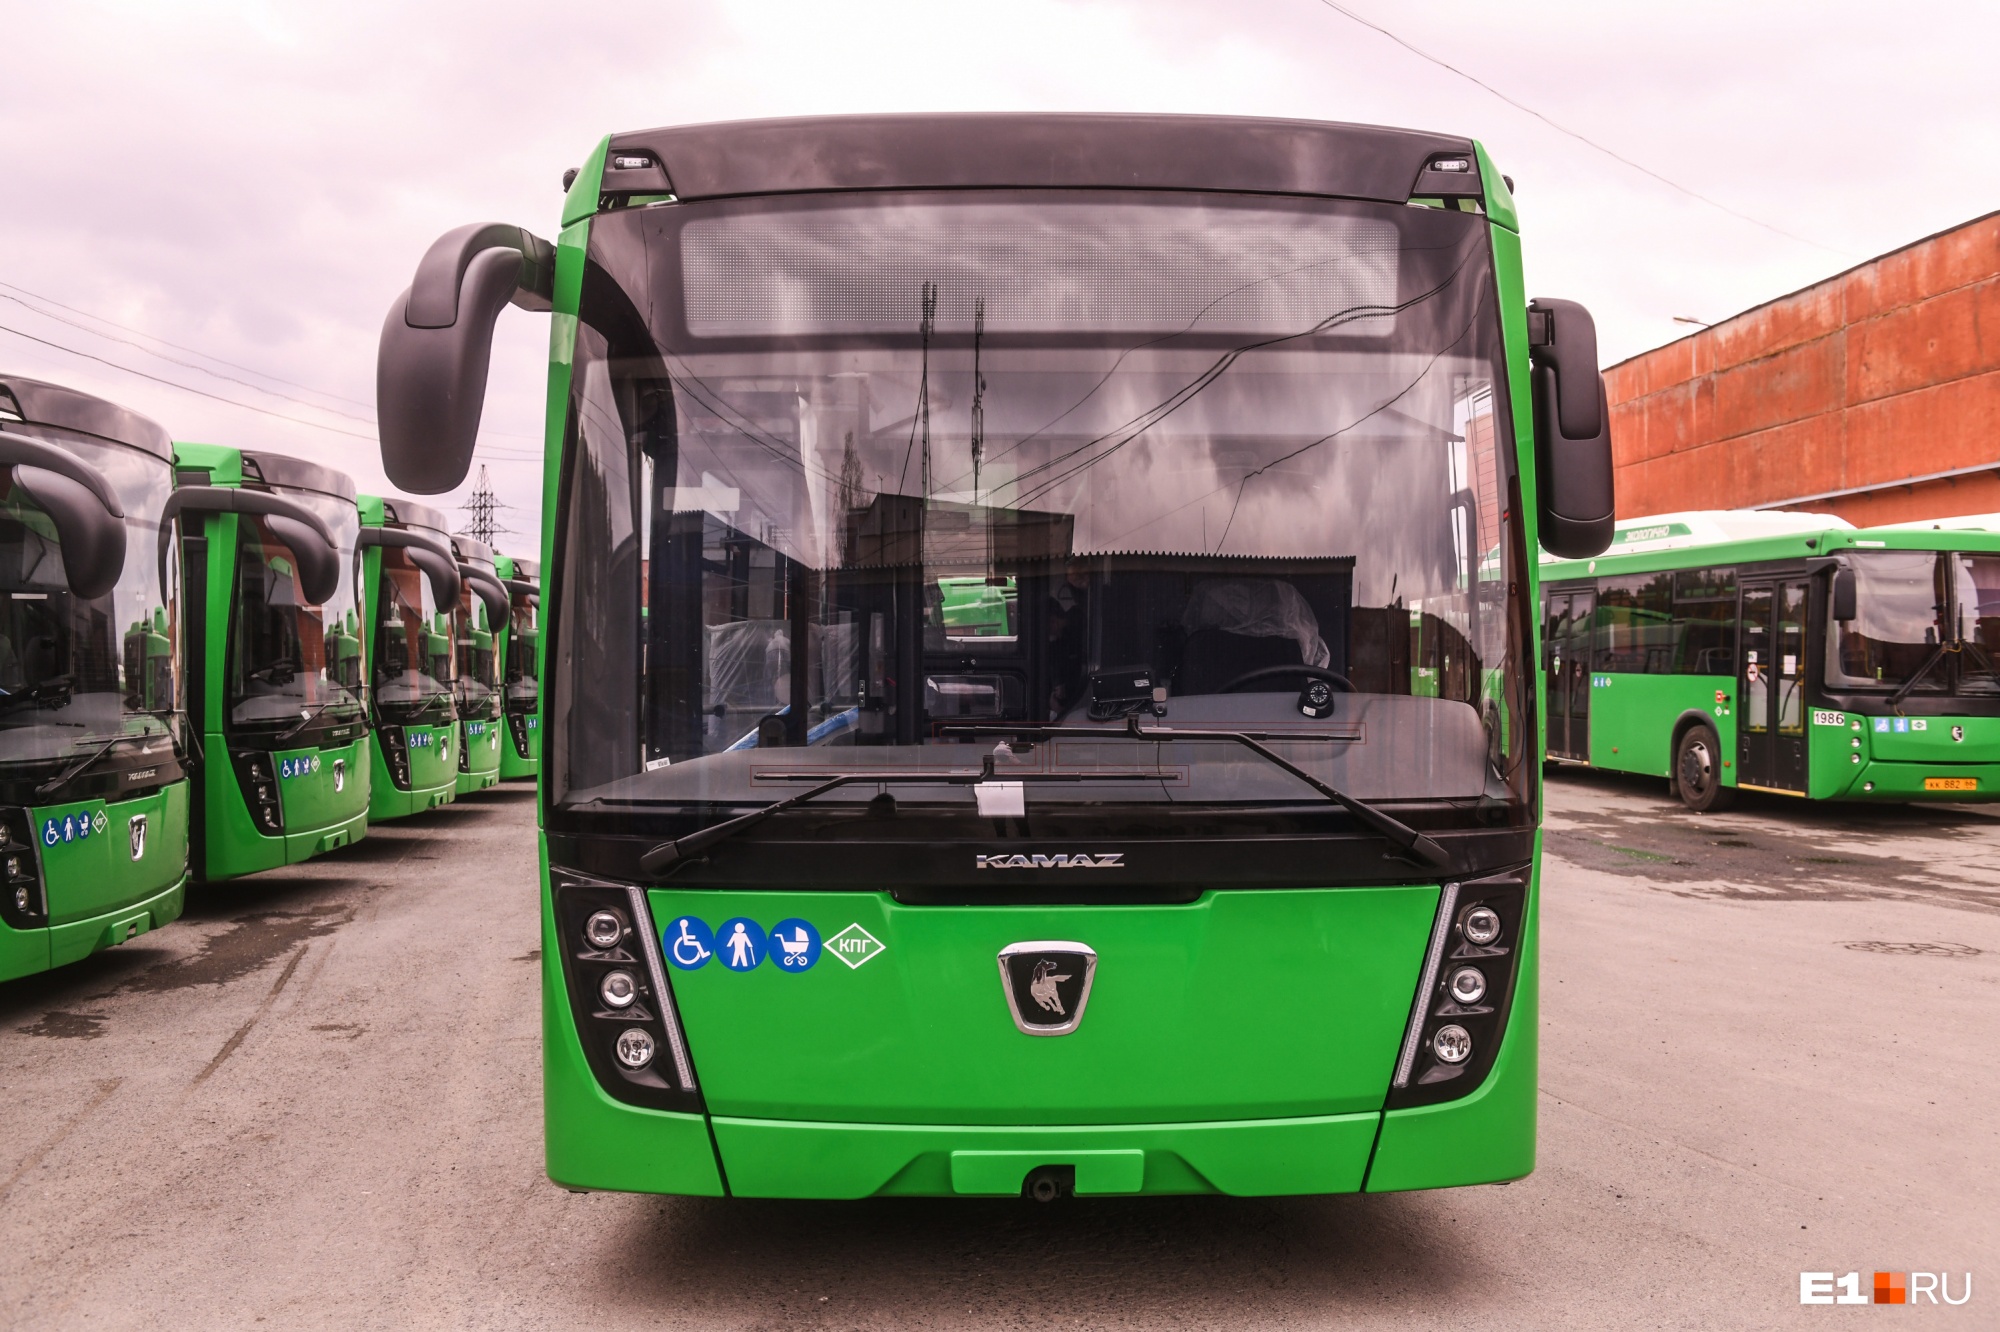 В Екатеринбурге водителей муниципальных автобусов обязали работать кондукторами: документ